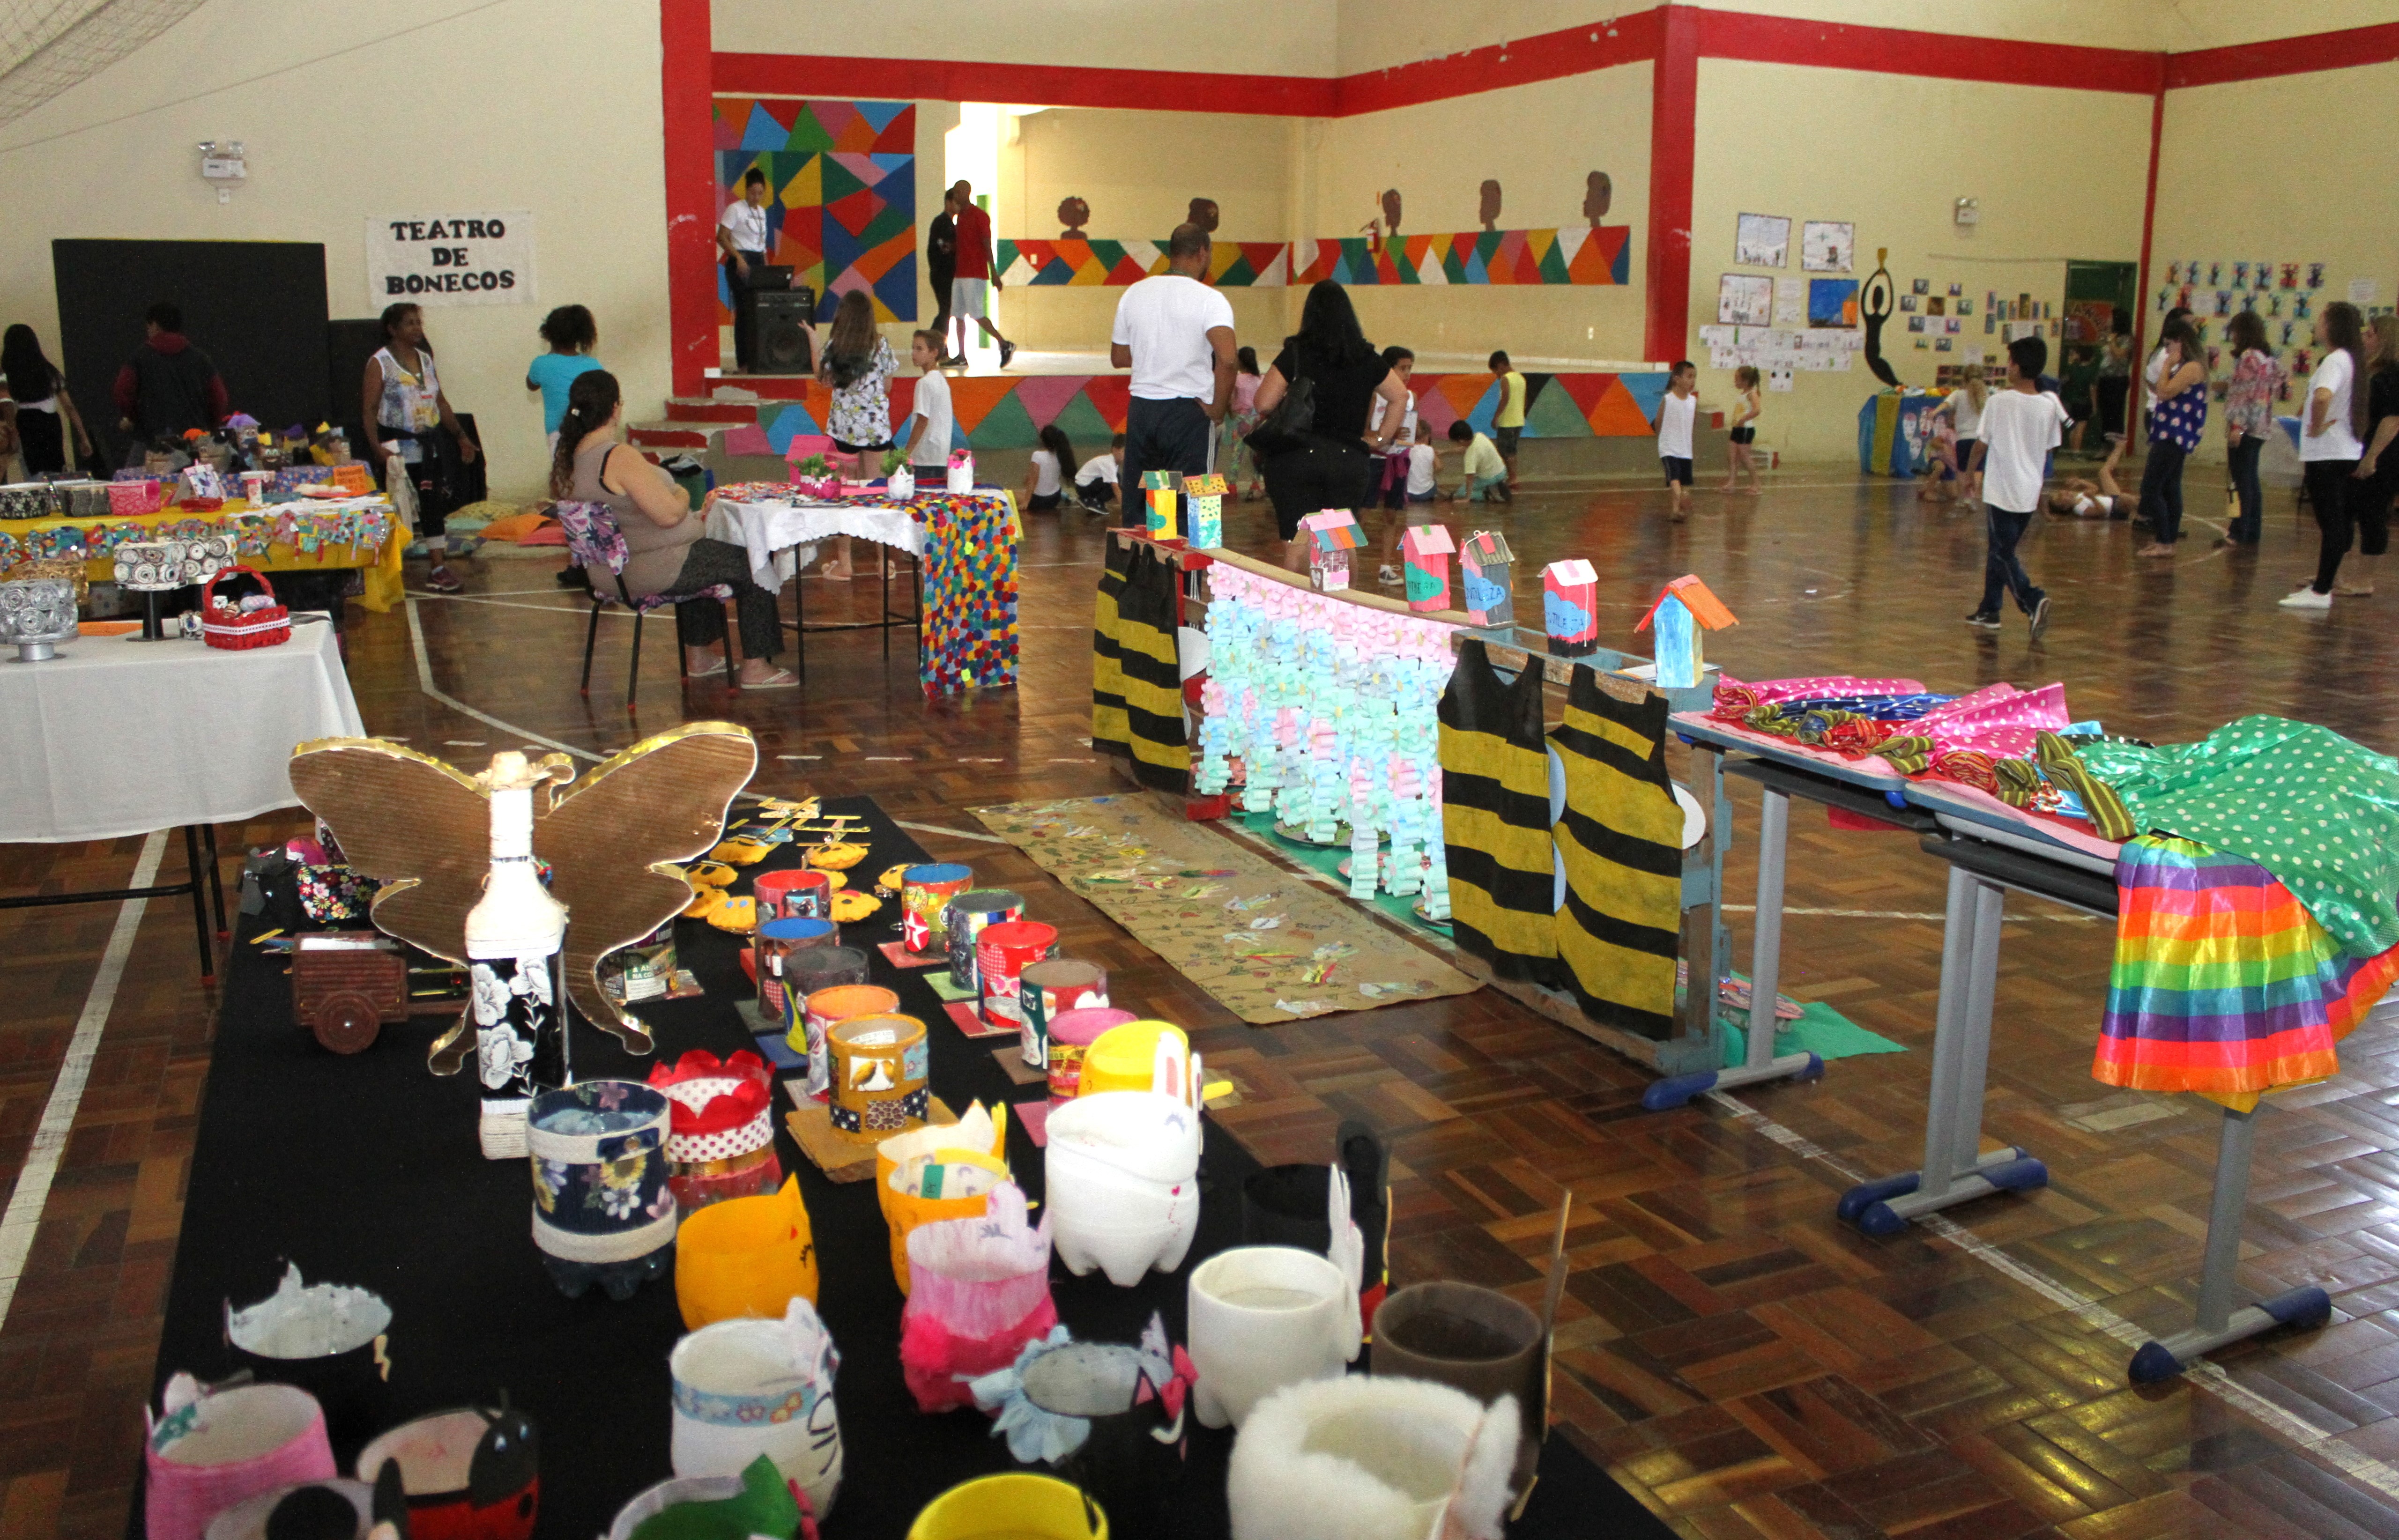 Escola Municipal Vilson Lalau do bairro Cristo redentor realiza 1ª Mostra Cultural e Científica